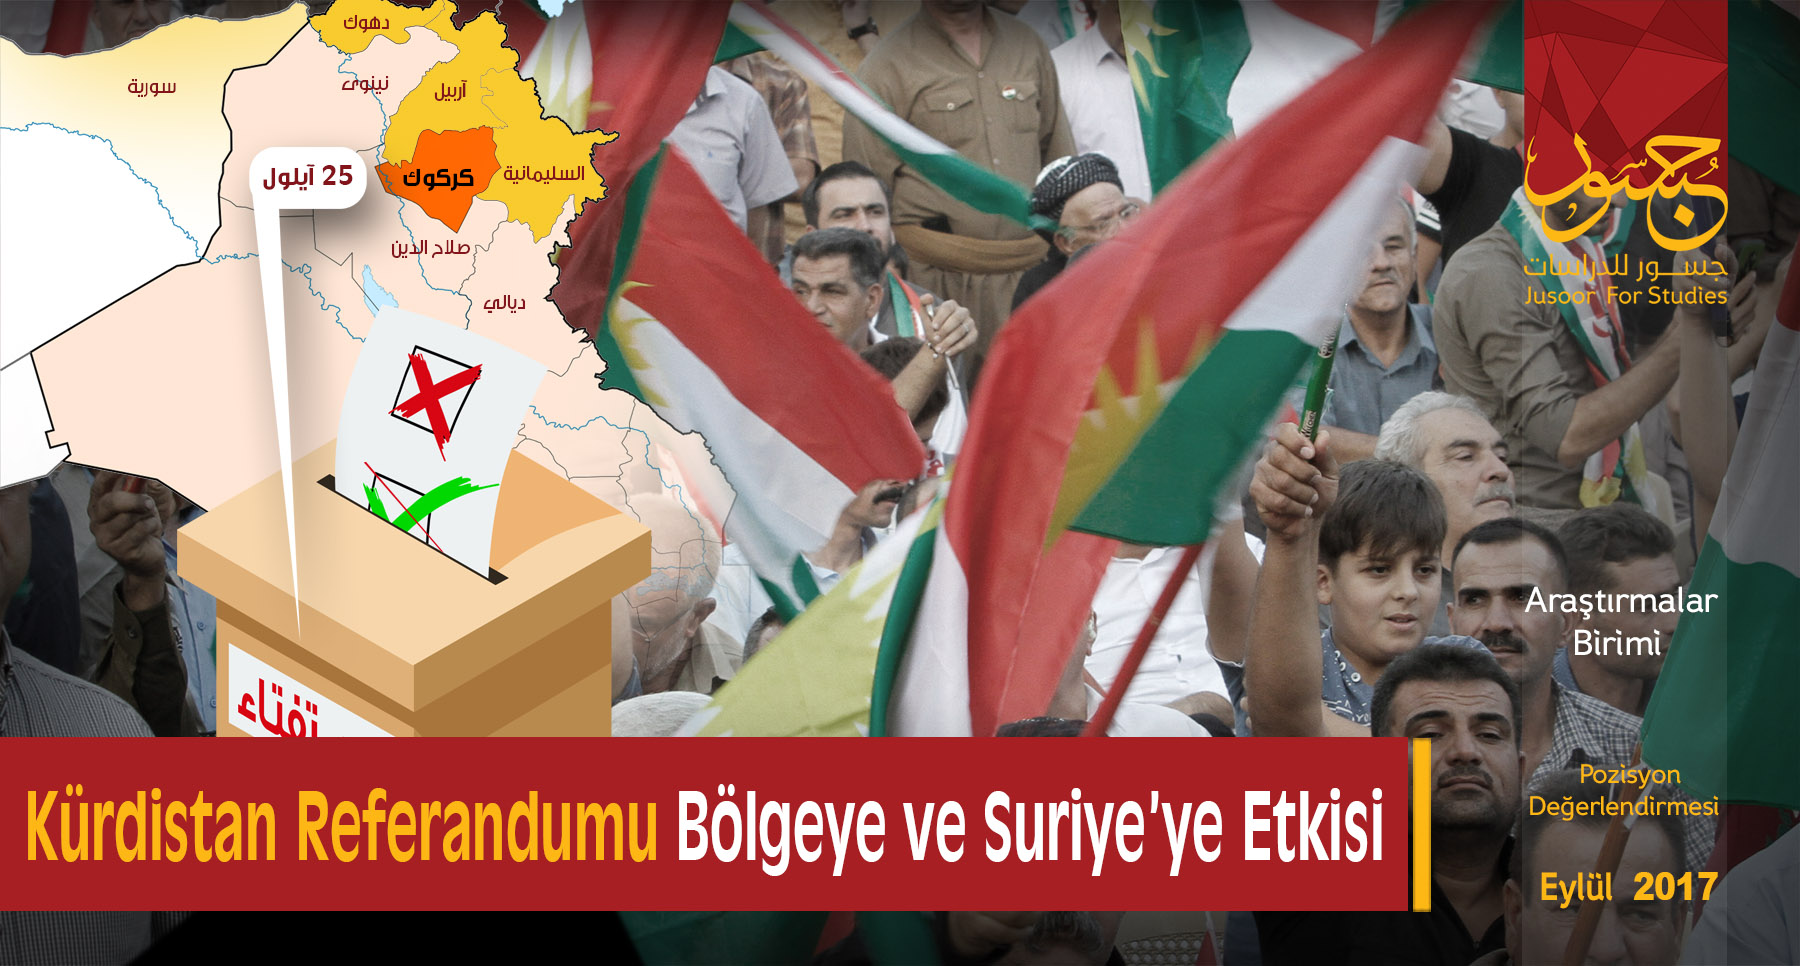  Kürdistan Referandumu Bölgeye ve Suriye’ye Etkisi